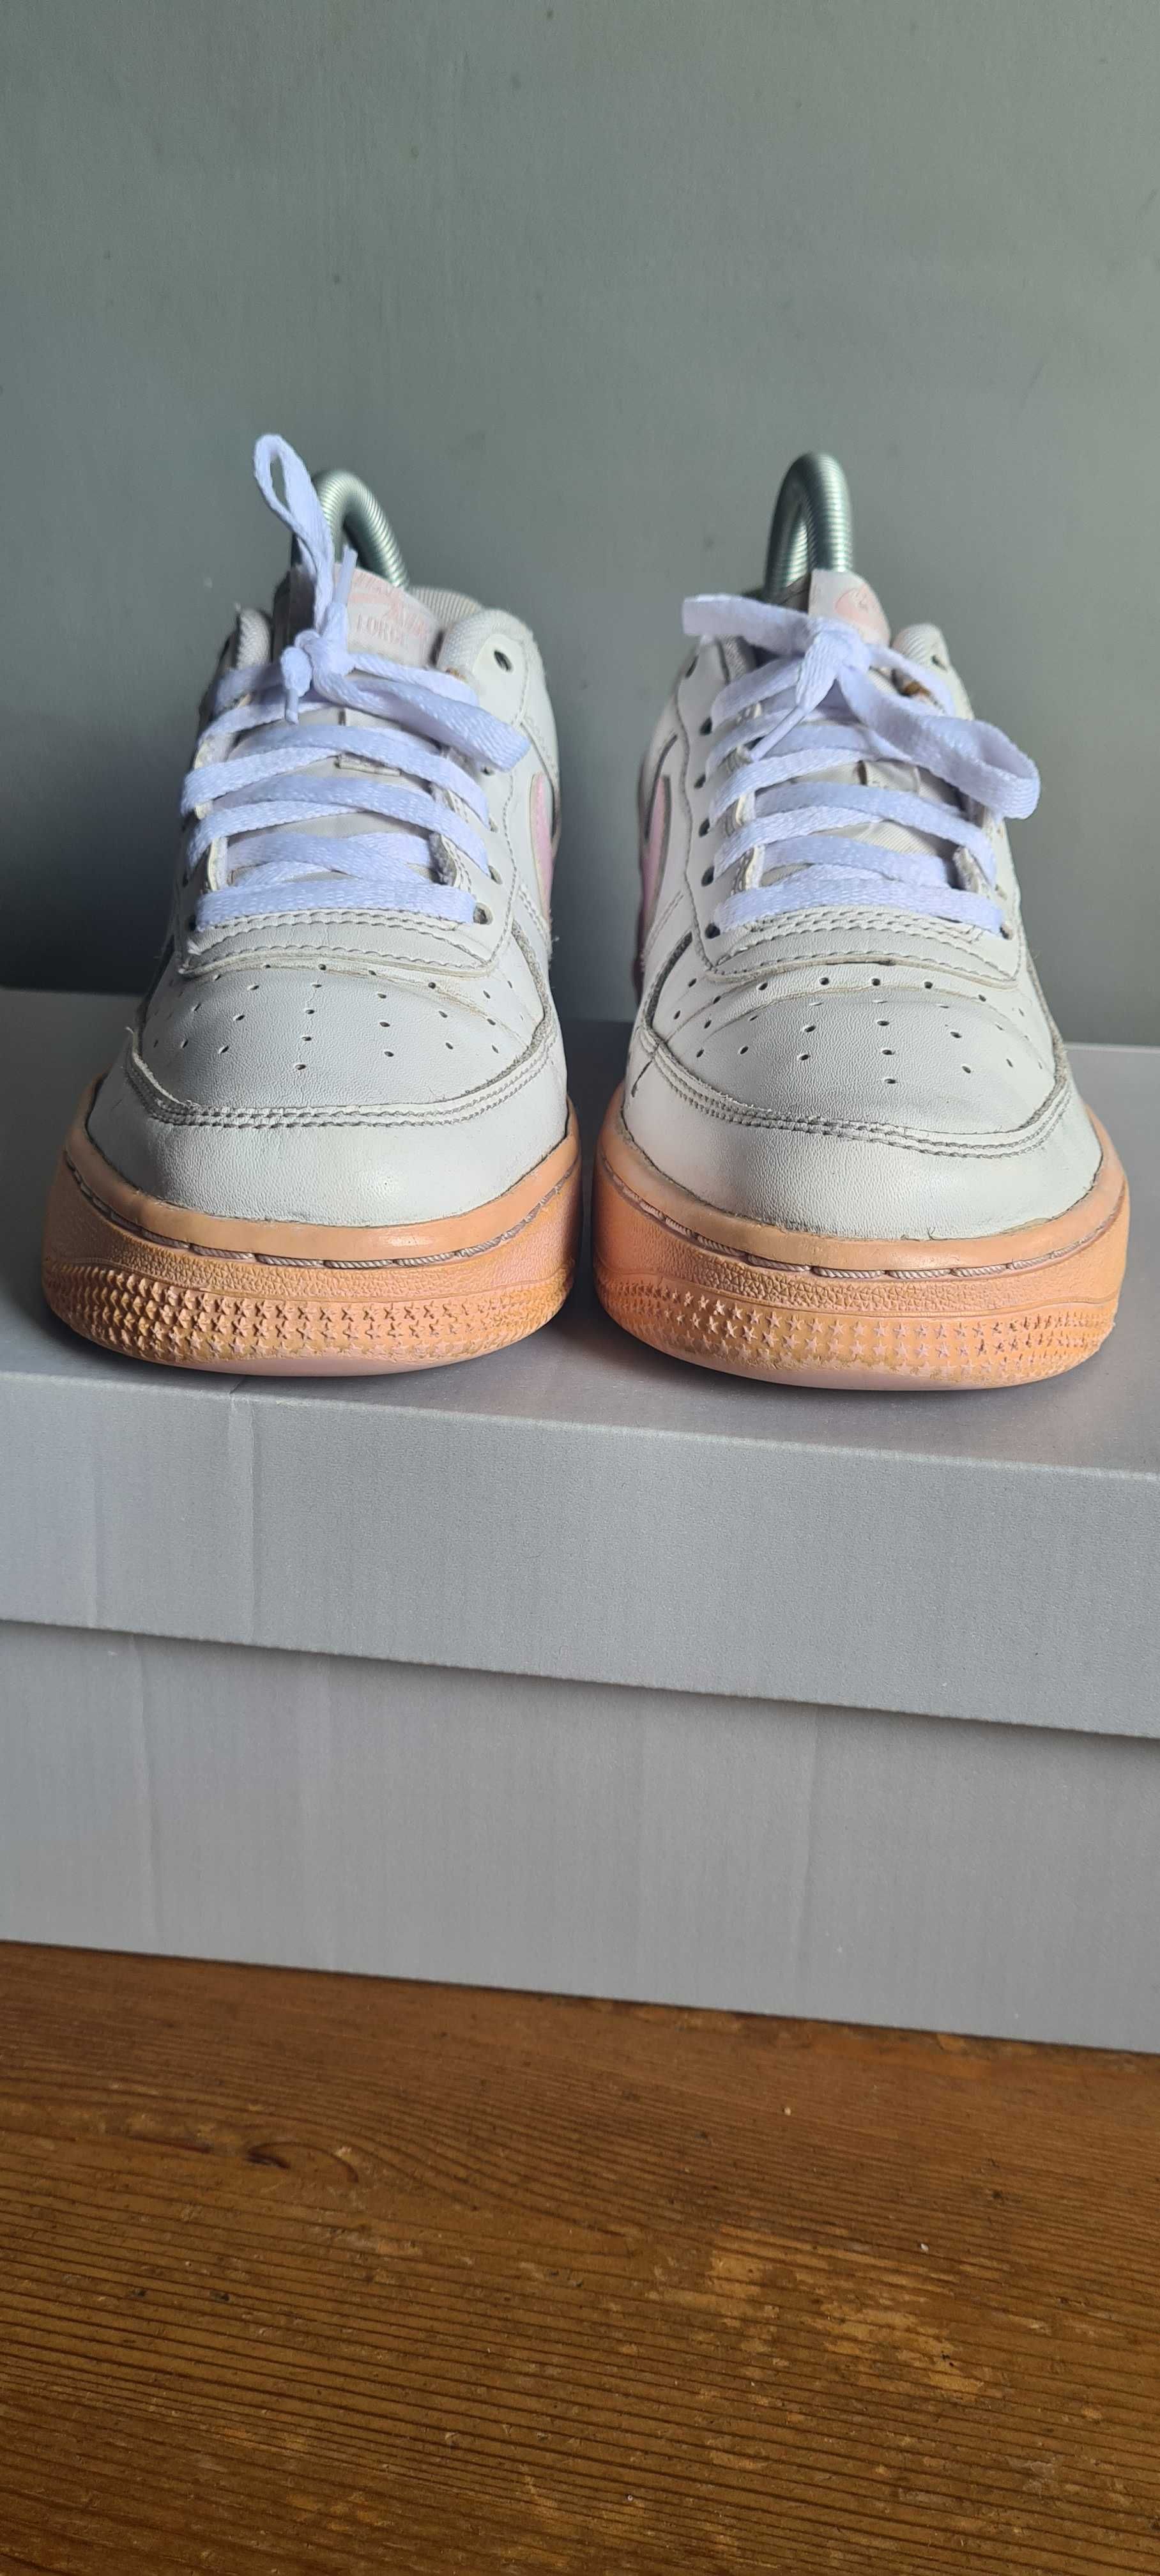 Białe buty marki Nike Air Force One w rozmiarze 38